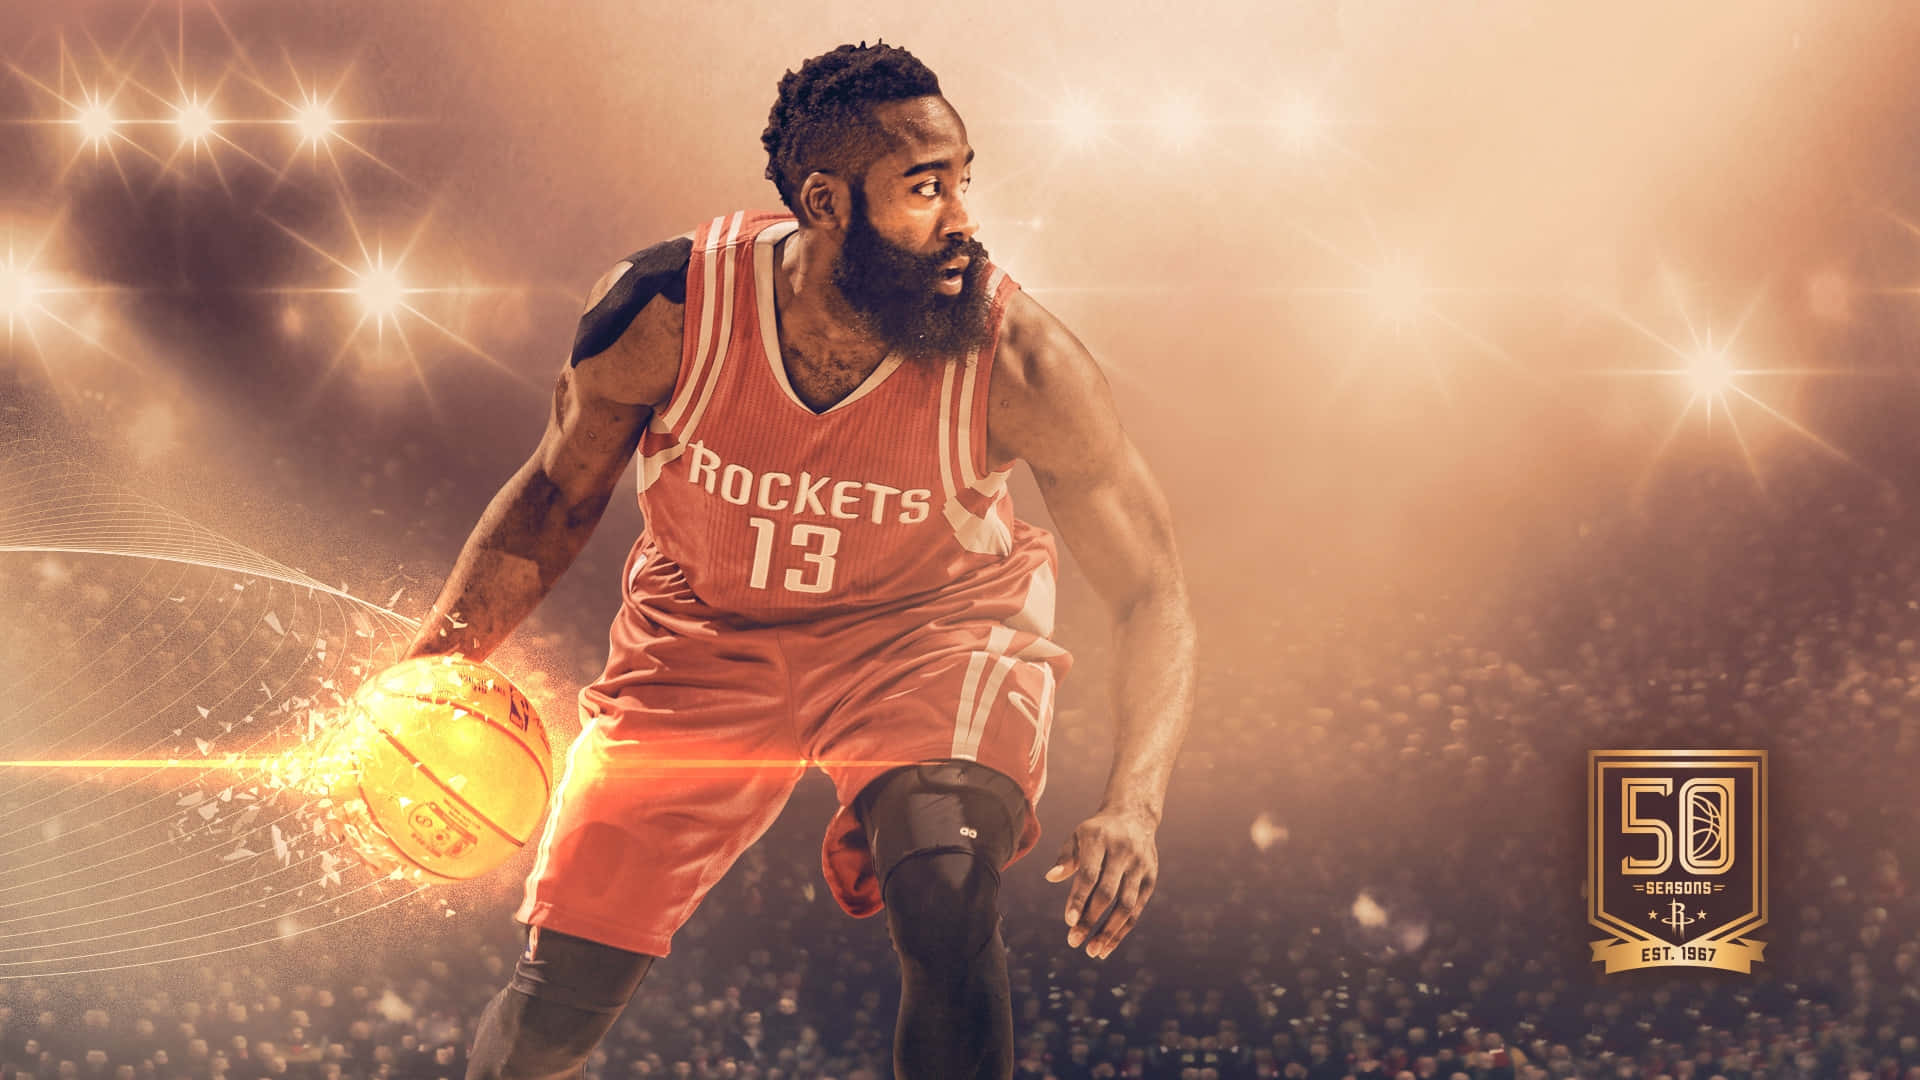 Nba2k Houston Rockets: Nba 2k Houston Rockets. Wallpaper